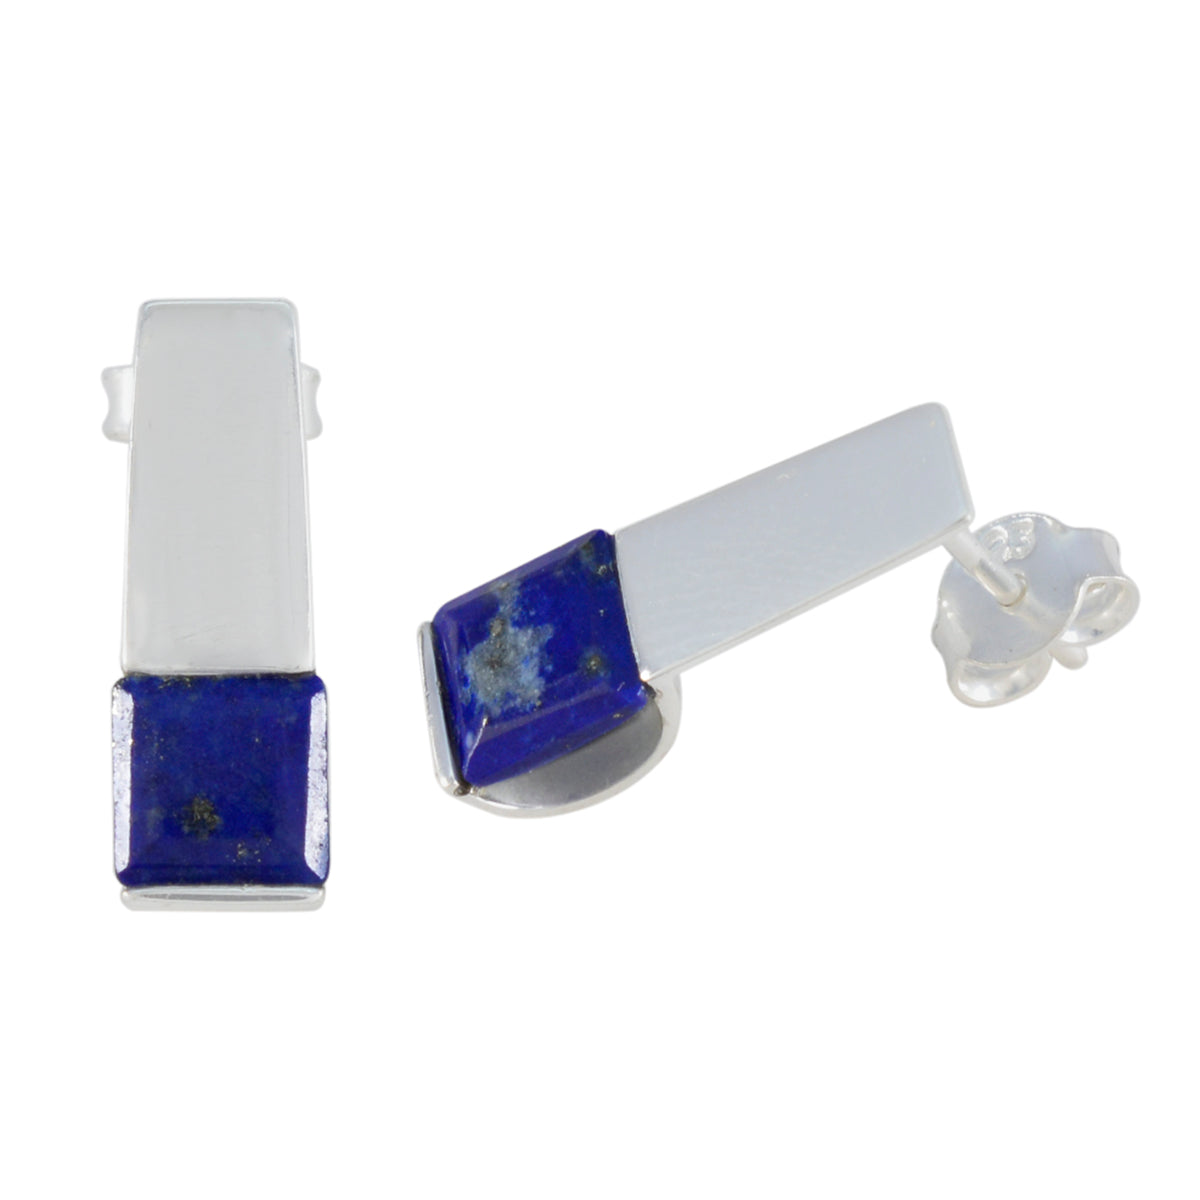 Riyo Heißer 925 Sterling Silber Ohrring Für Dame Lapis Lazuli Ohrring Lünette Einstellung Blau Ohrring Bolzen Ohrring